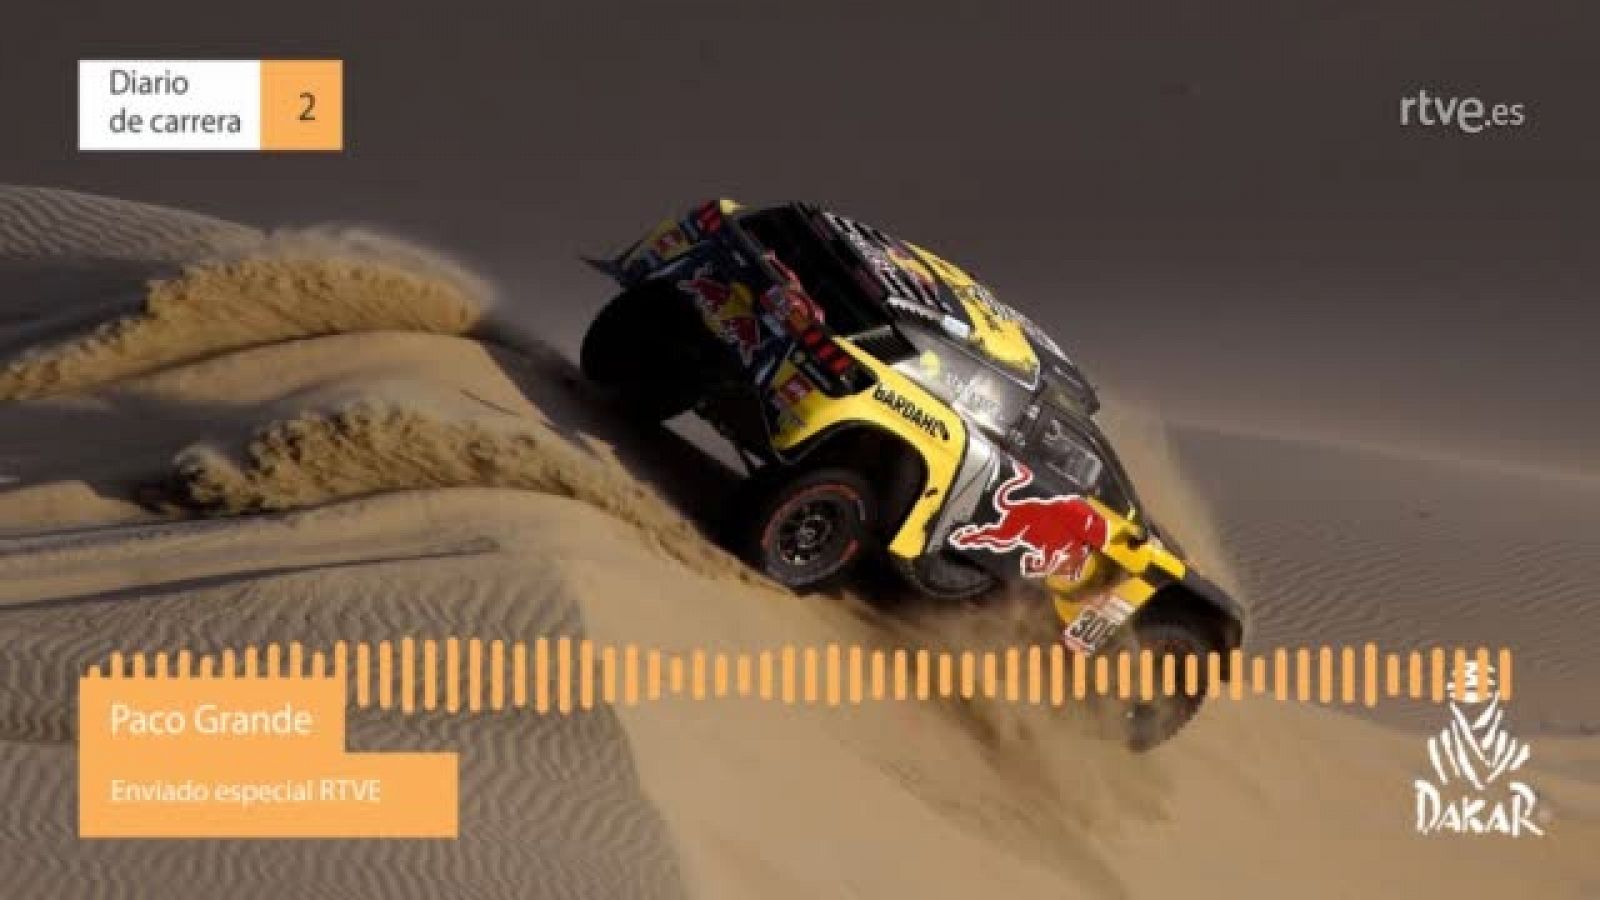 Dakar 2019. Diario de Carrera. Etapa 2 - RTVE.es